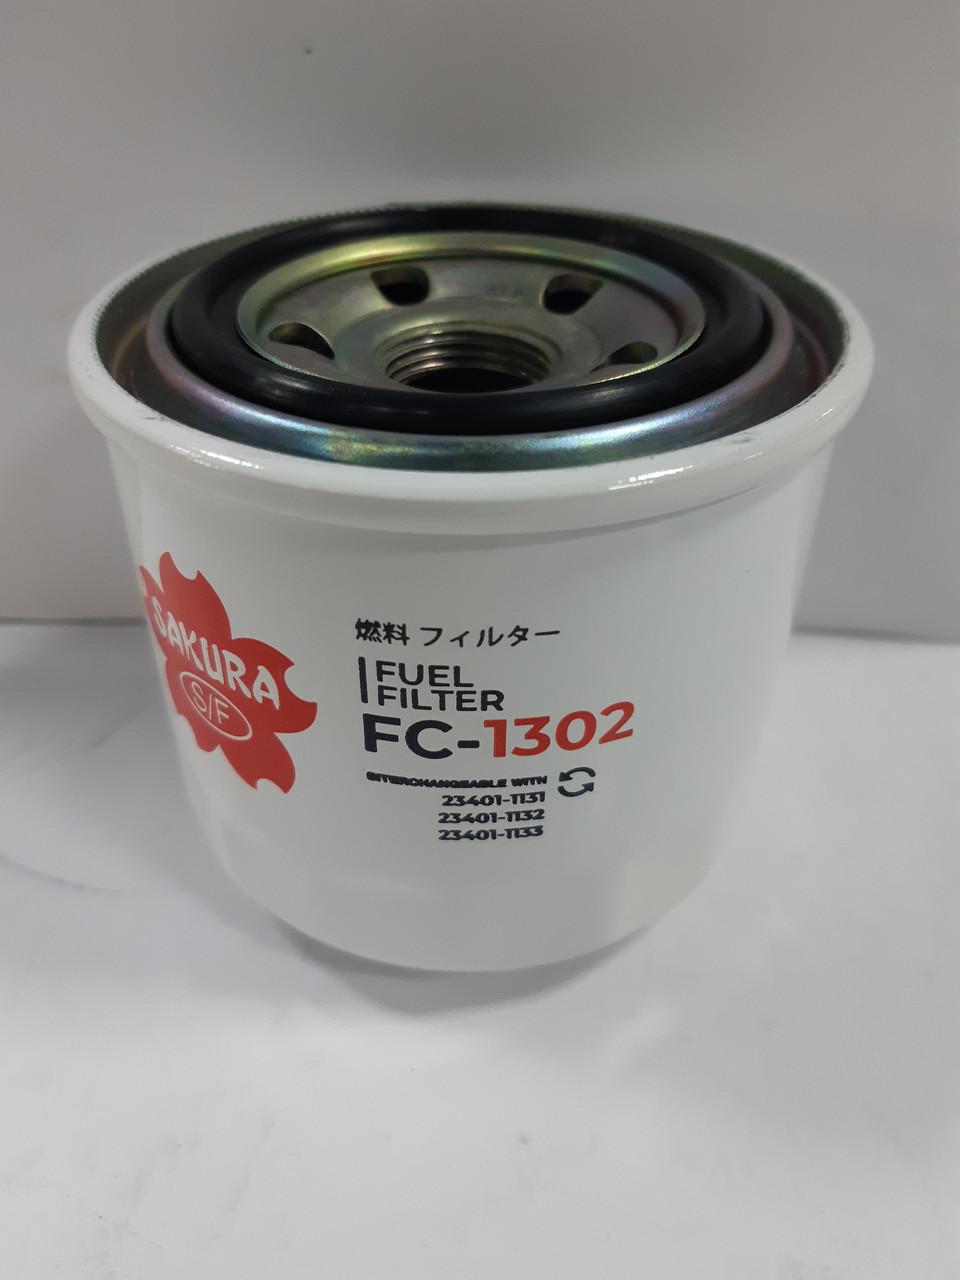 Топливный фильтр FC-1302 HINO 23401-1131